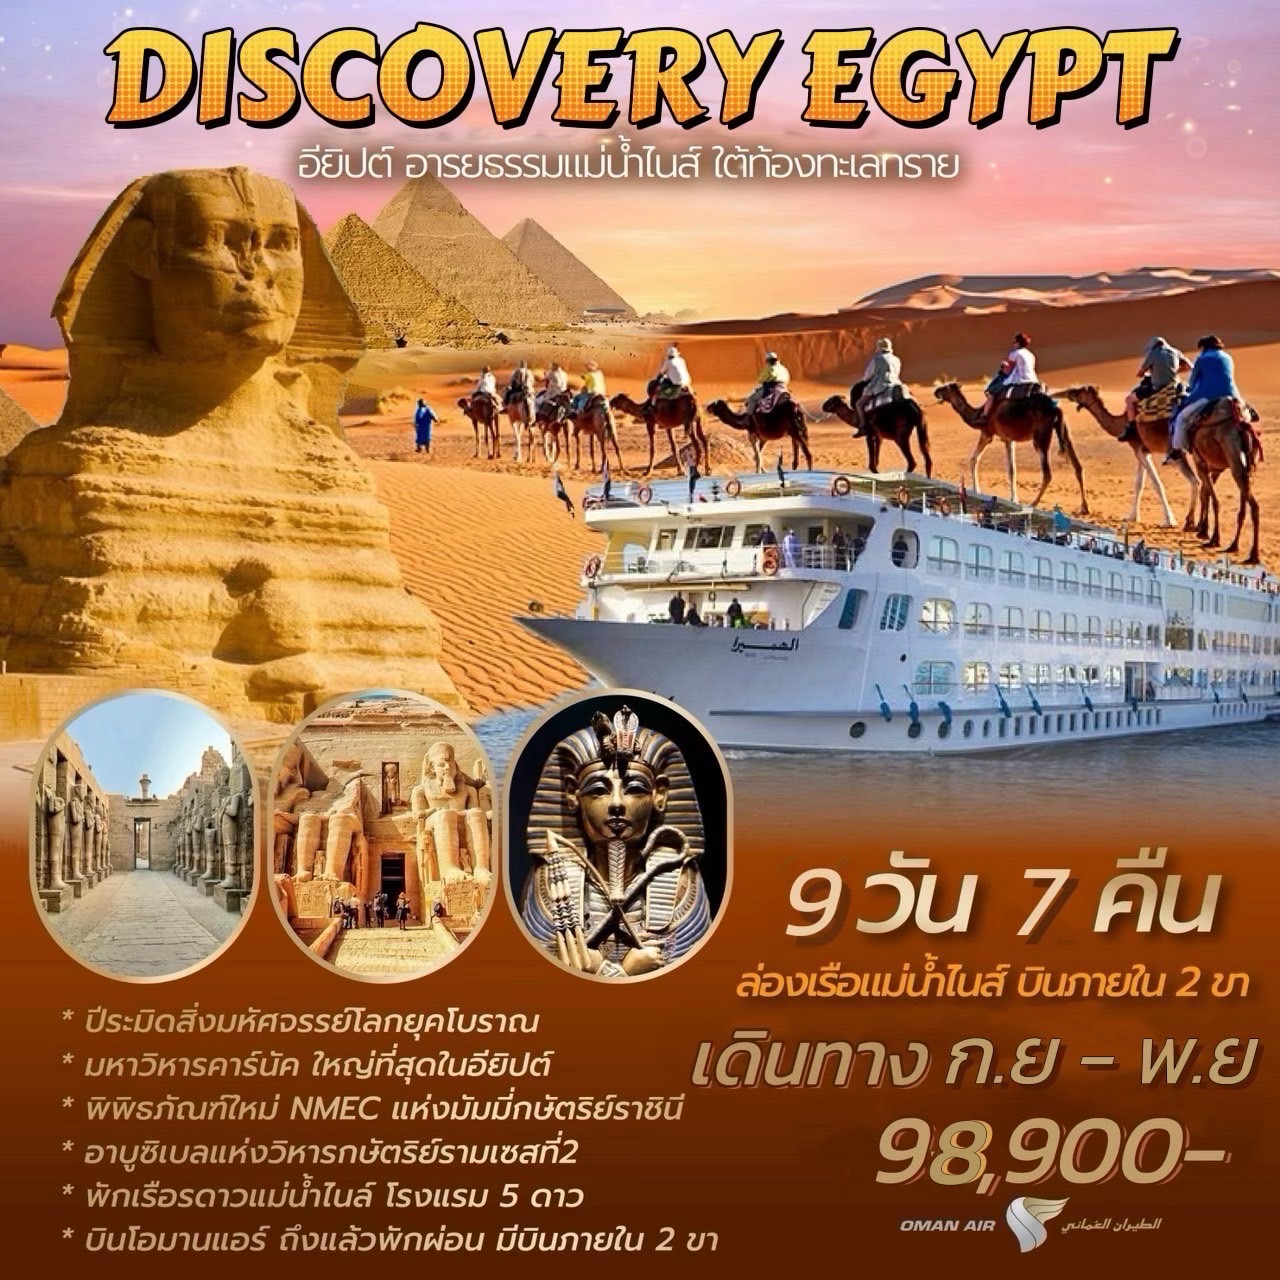 ทัวร์อียิปต์ DISCOVERY EGYPT 9 วัน 7 คืน